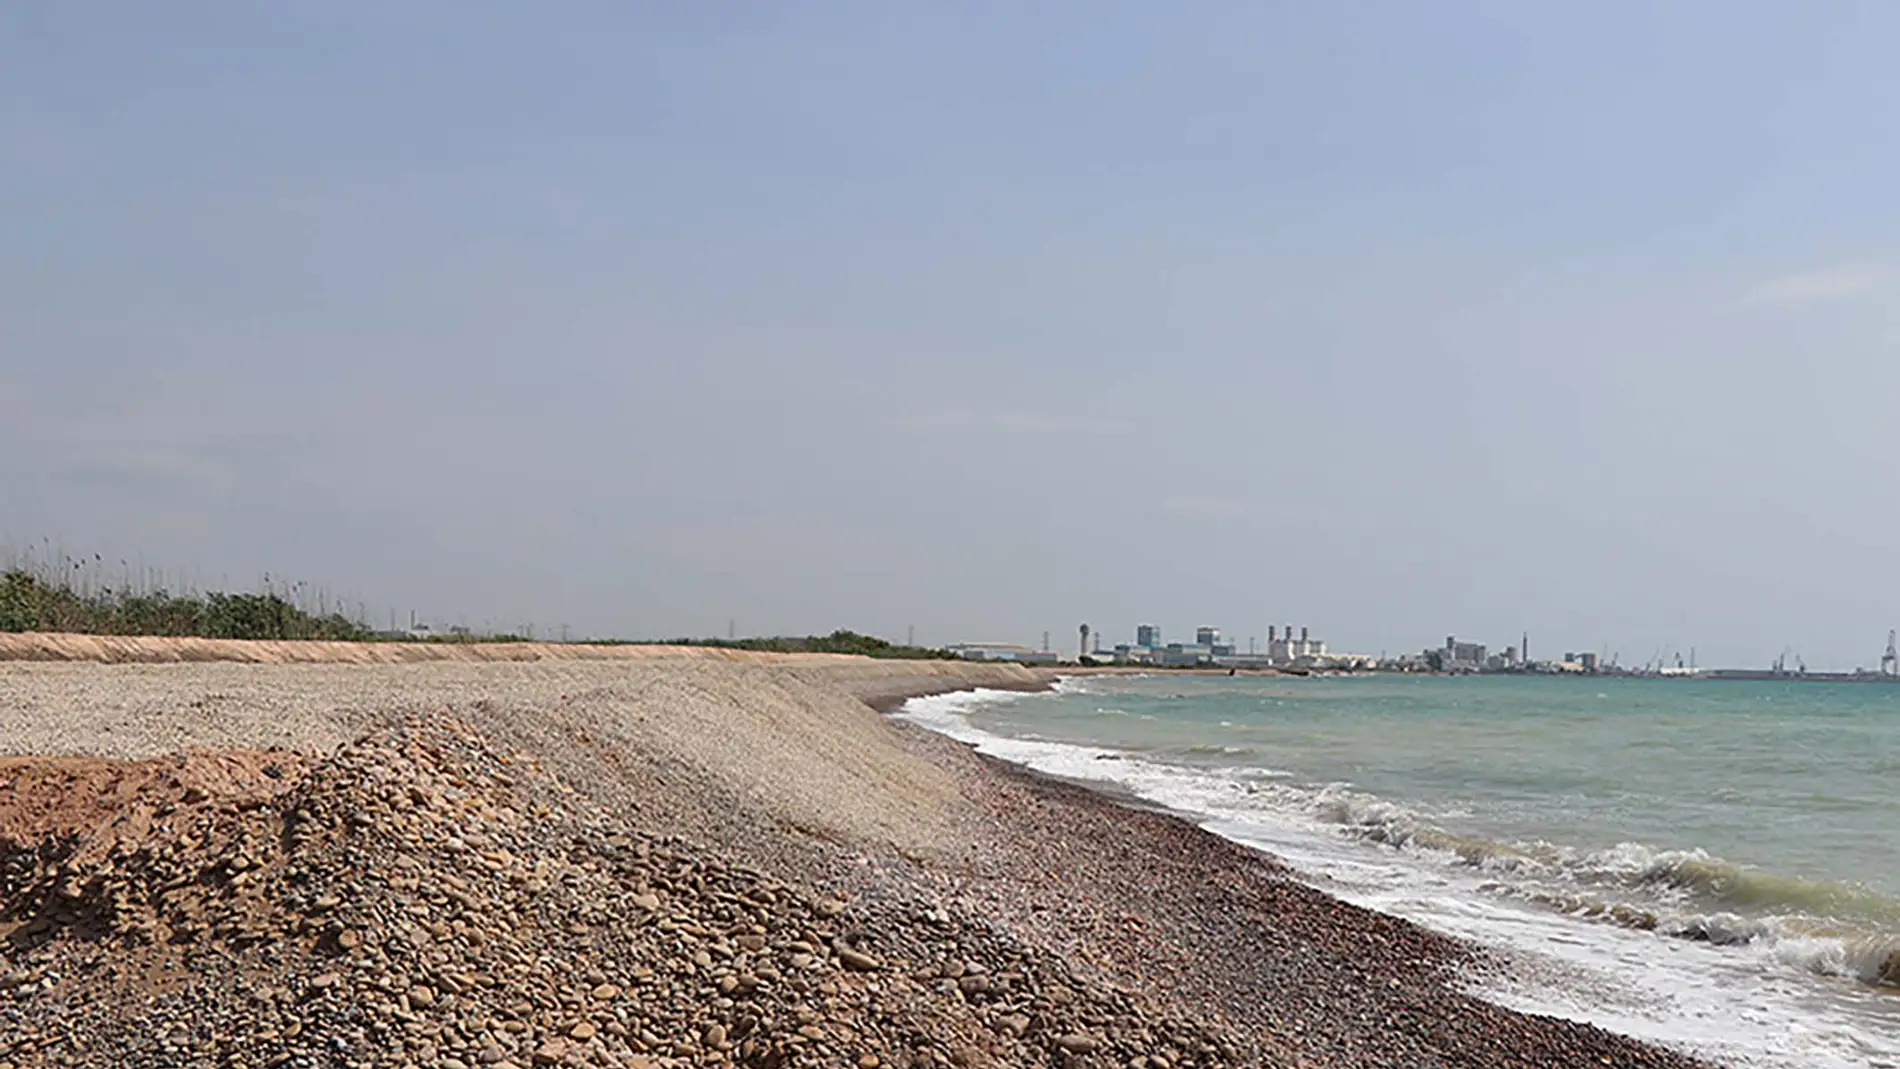 La Marjal dels Moros, protegida del mar por una barrera de contención de materiales áridos